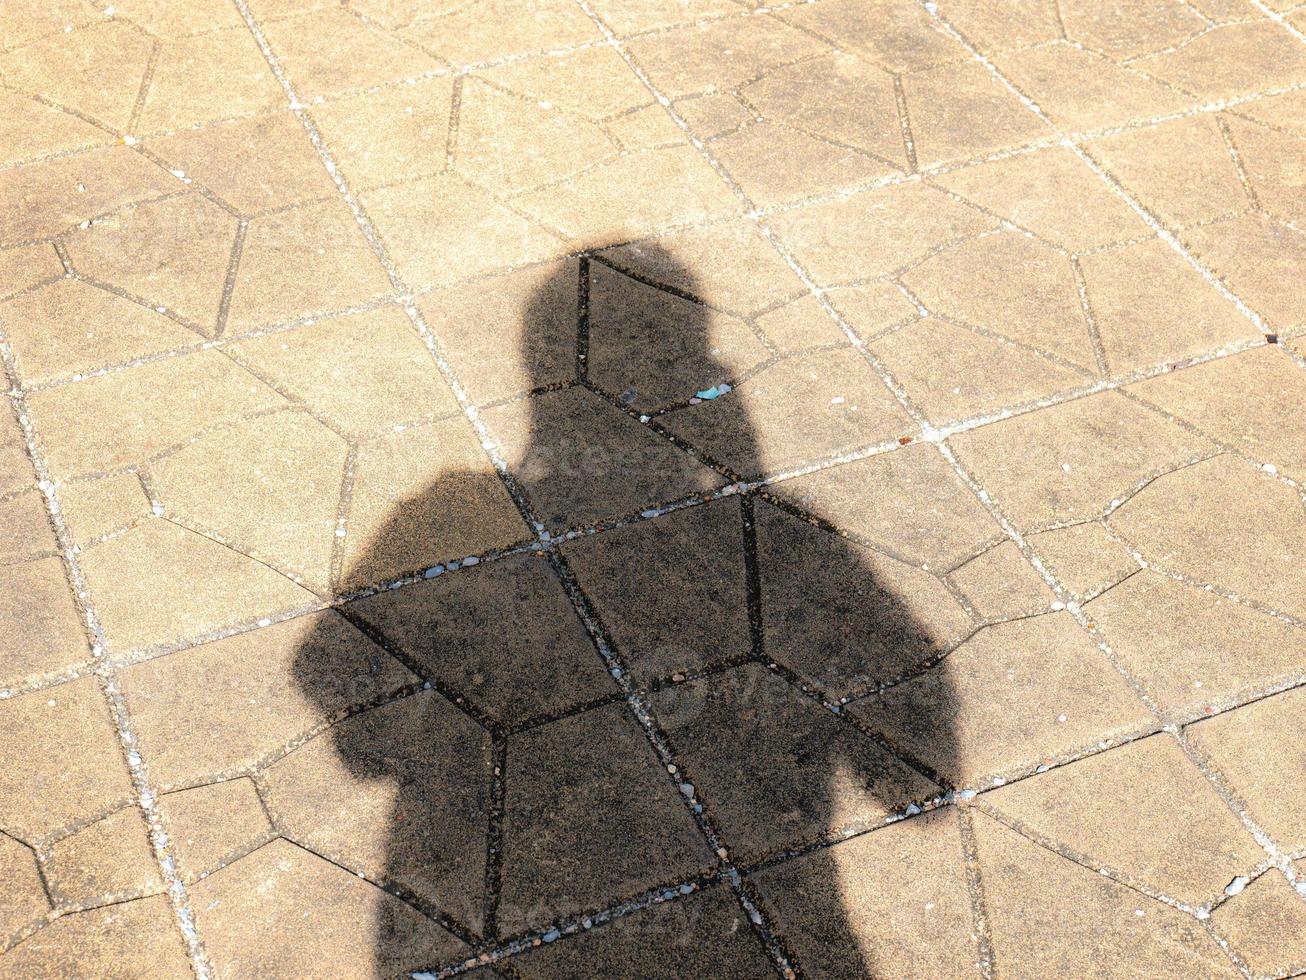 Tome una sombra de sí mismo en el camino Las sombras contra la luz del sol crean una forma oscura. mostrando diferentes superficies foto